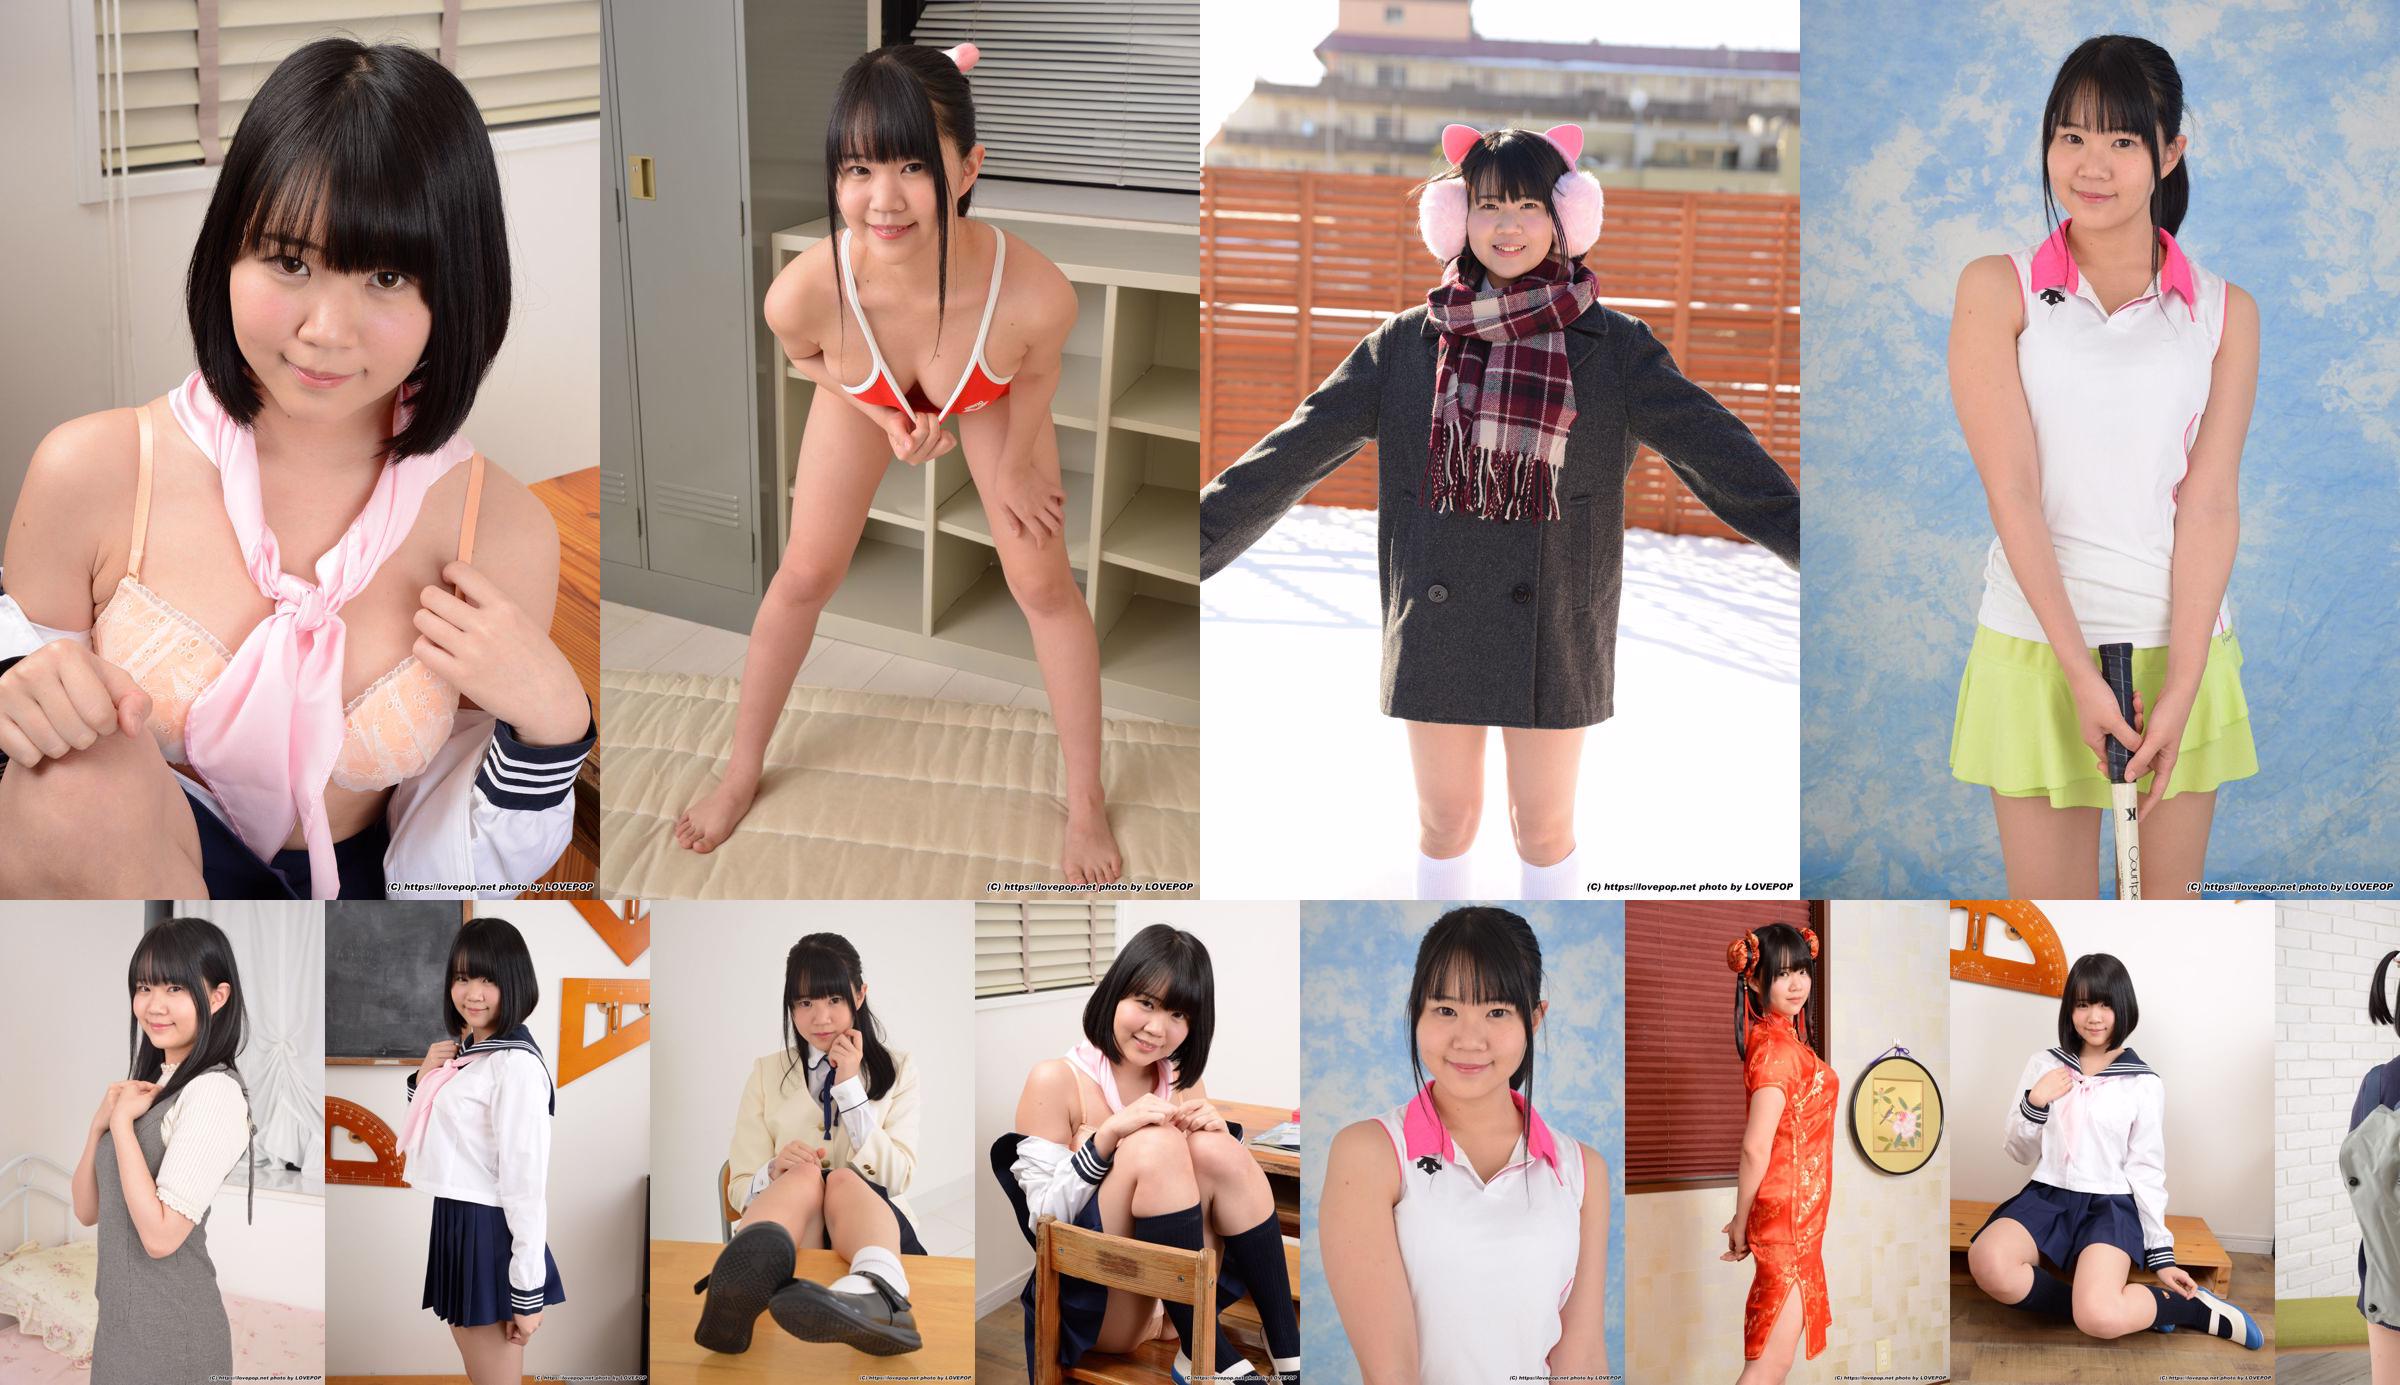 [LOVEPOP] Hinata Suzumori Suzumori Hinata/Suzumori ひなた Photoset 09 No.aebde6 Pagina 5